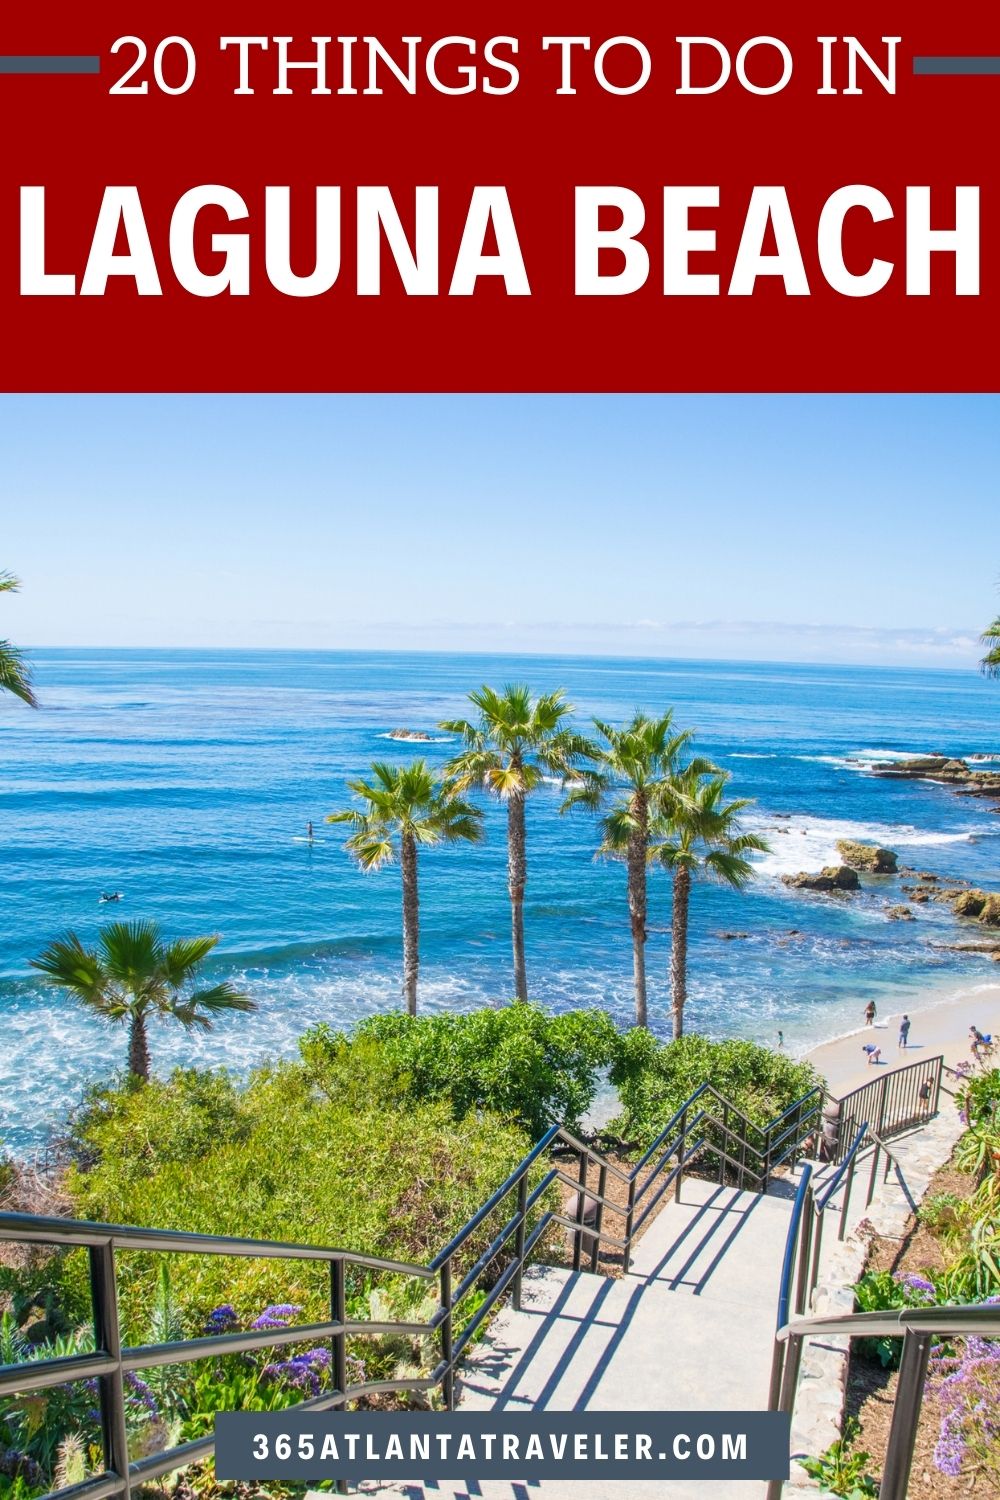 20 BEST THINGS TO DO IN LAGUNA BEACH, CALIFORNIA